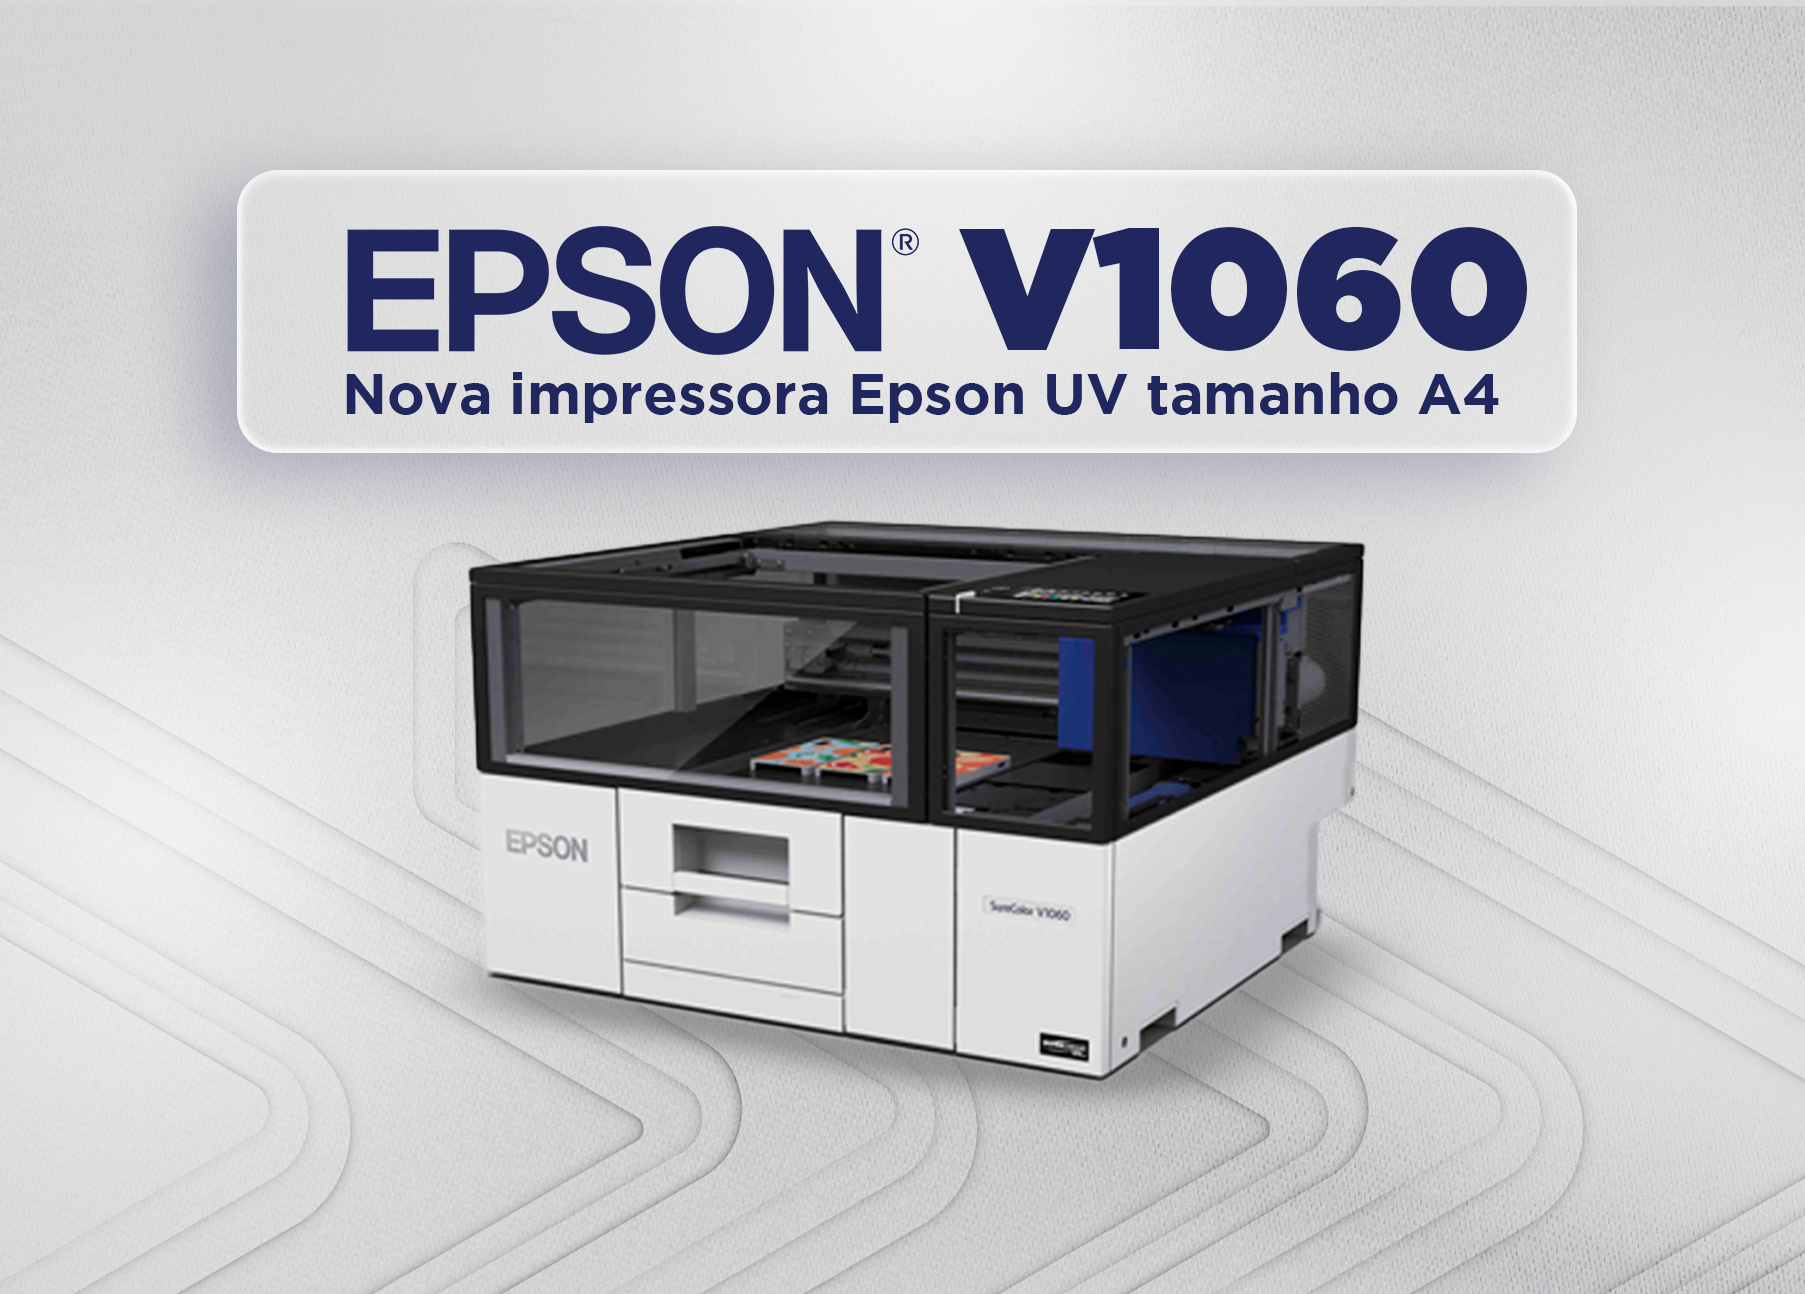 Epson apresenta inovação: Impressora de mesa UV para personalização de objetos.